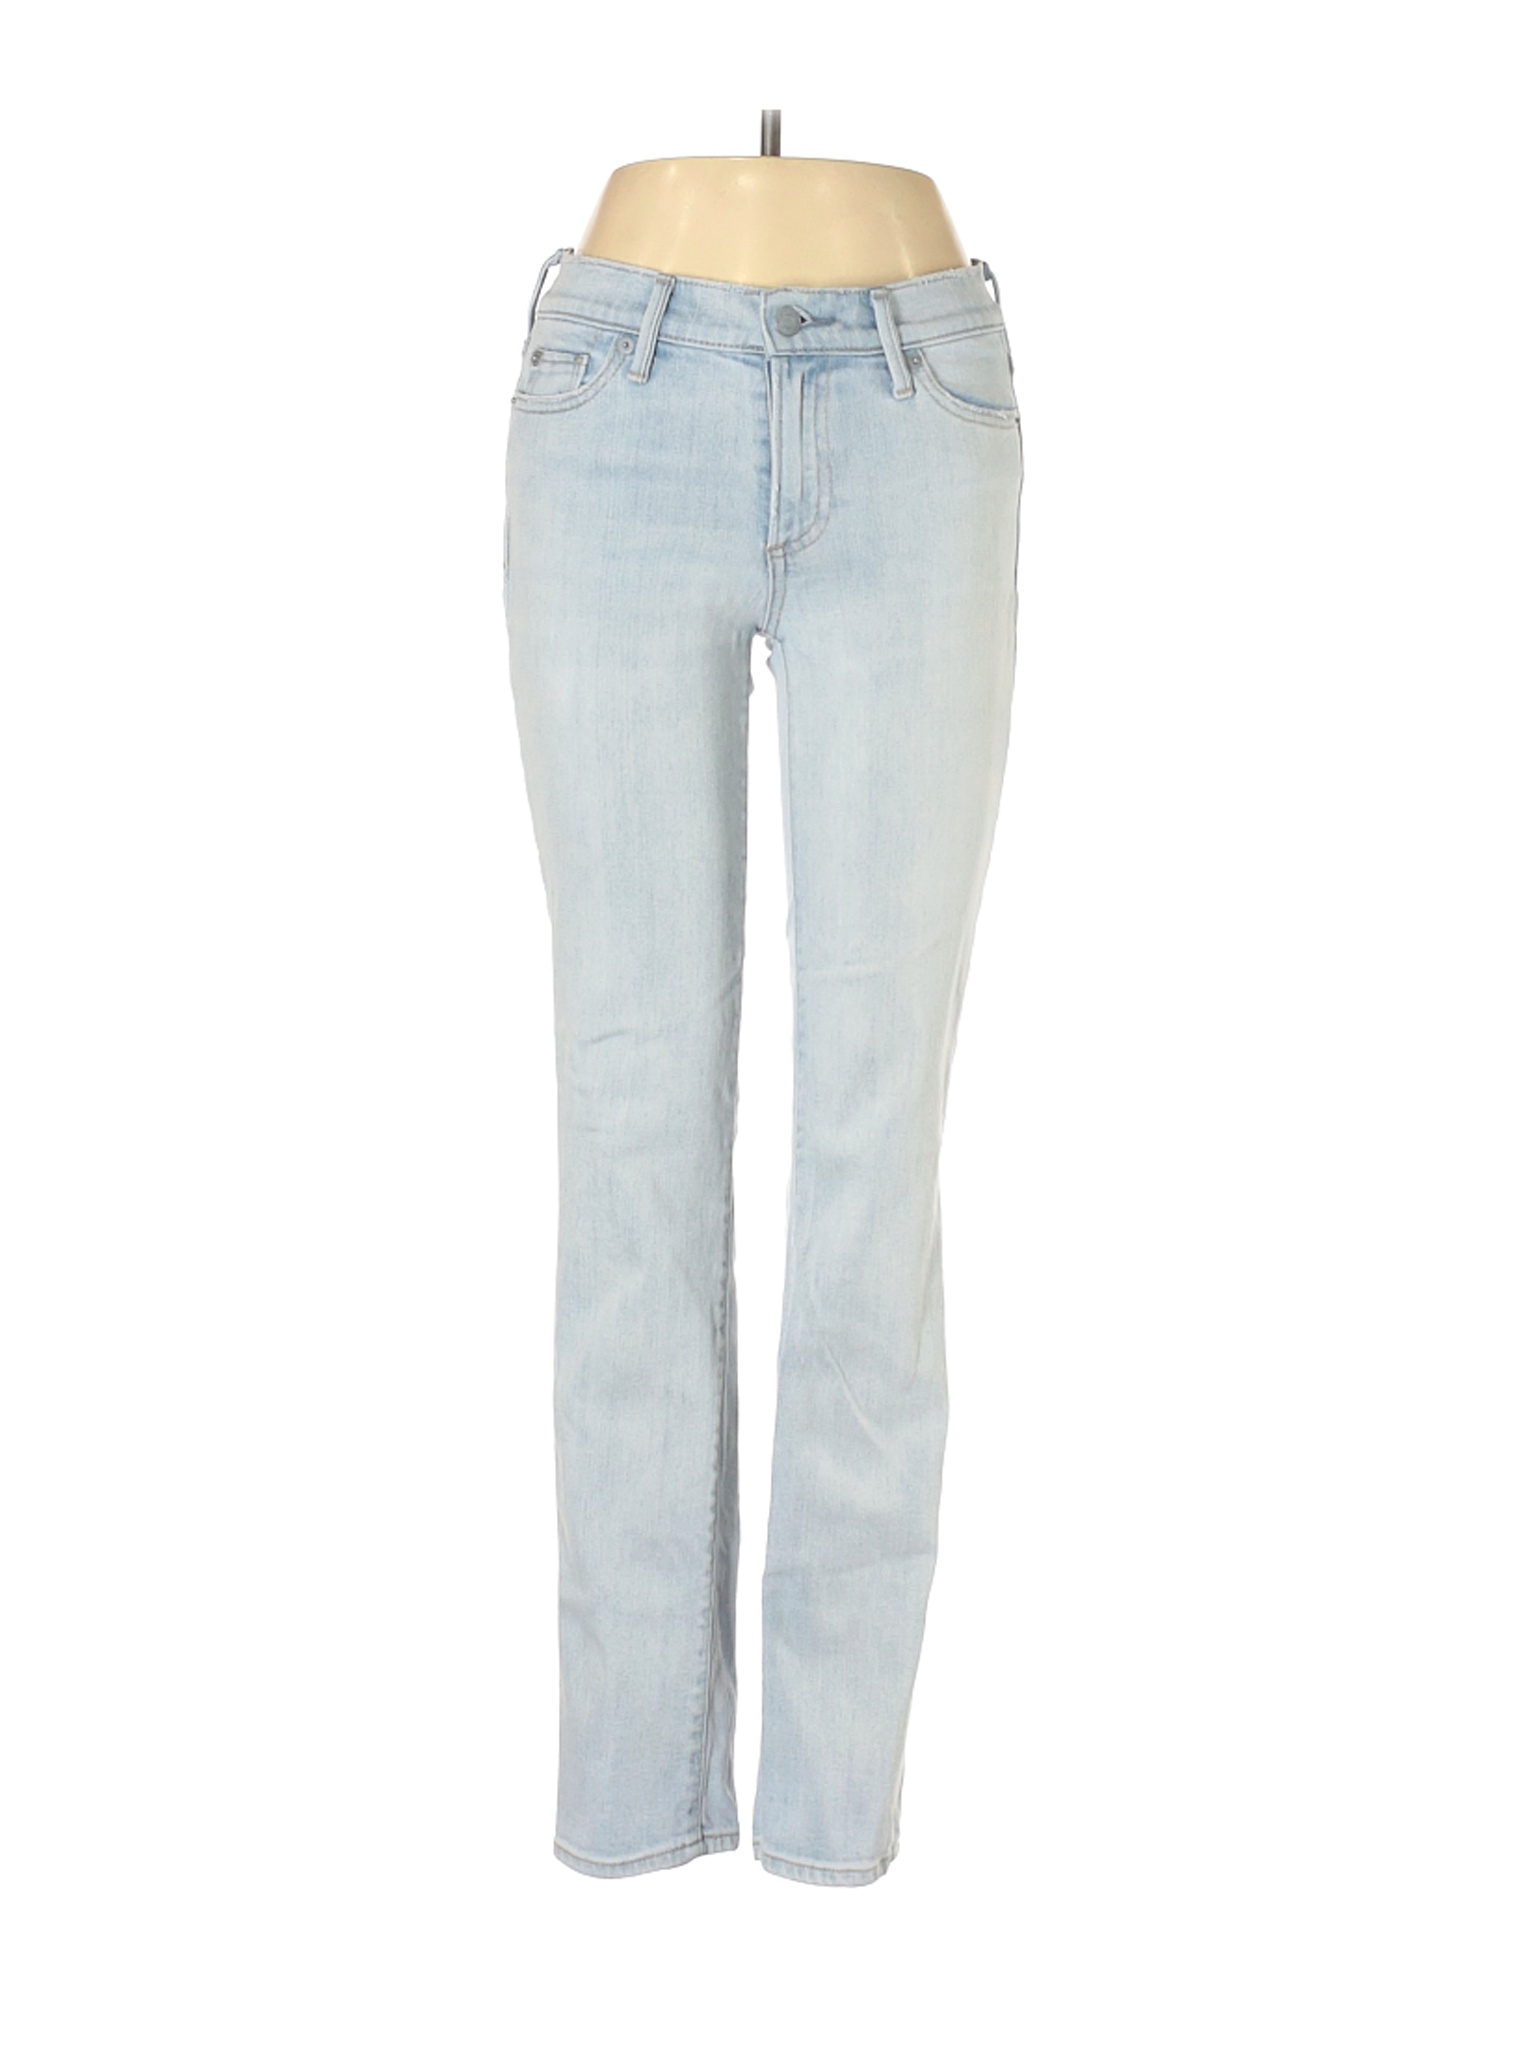 Gap Women Blue Jeans 25W | eBay